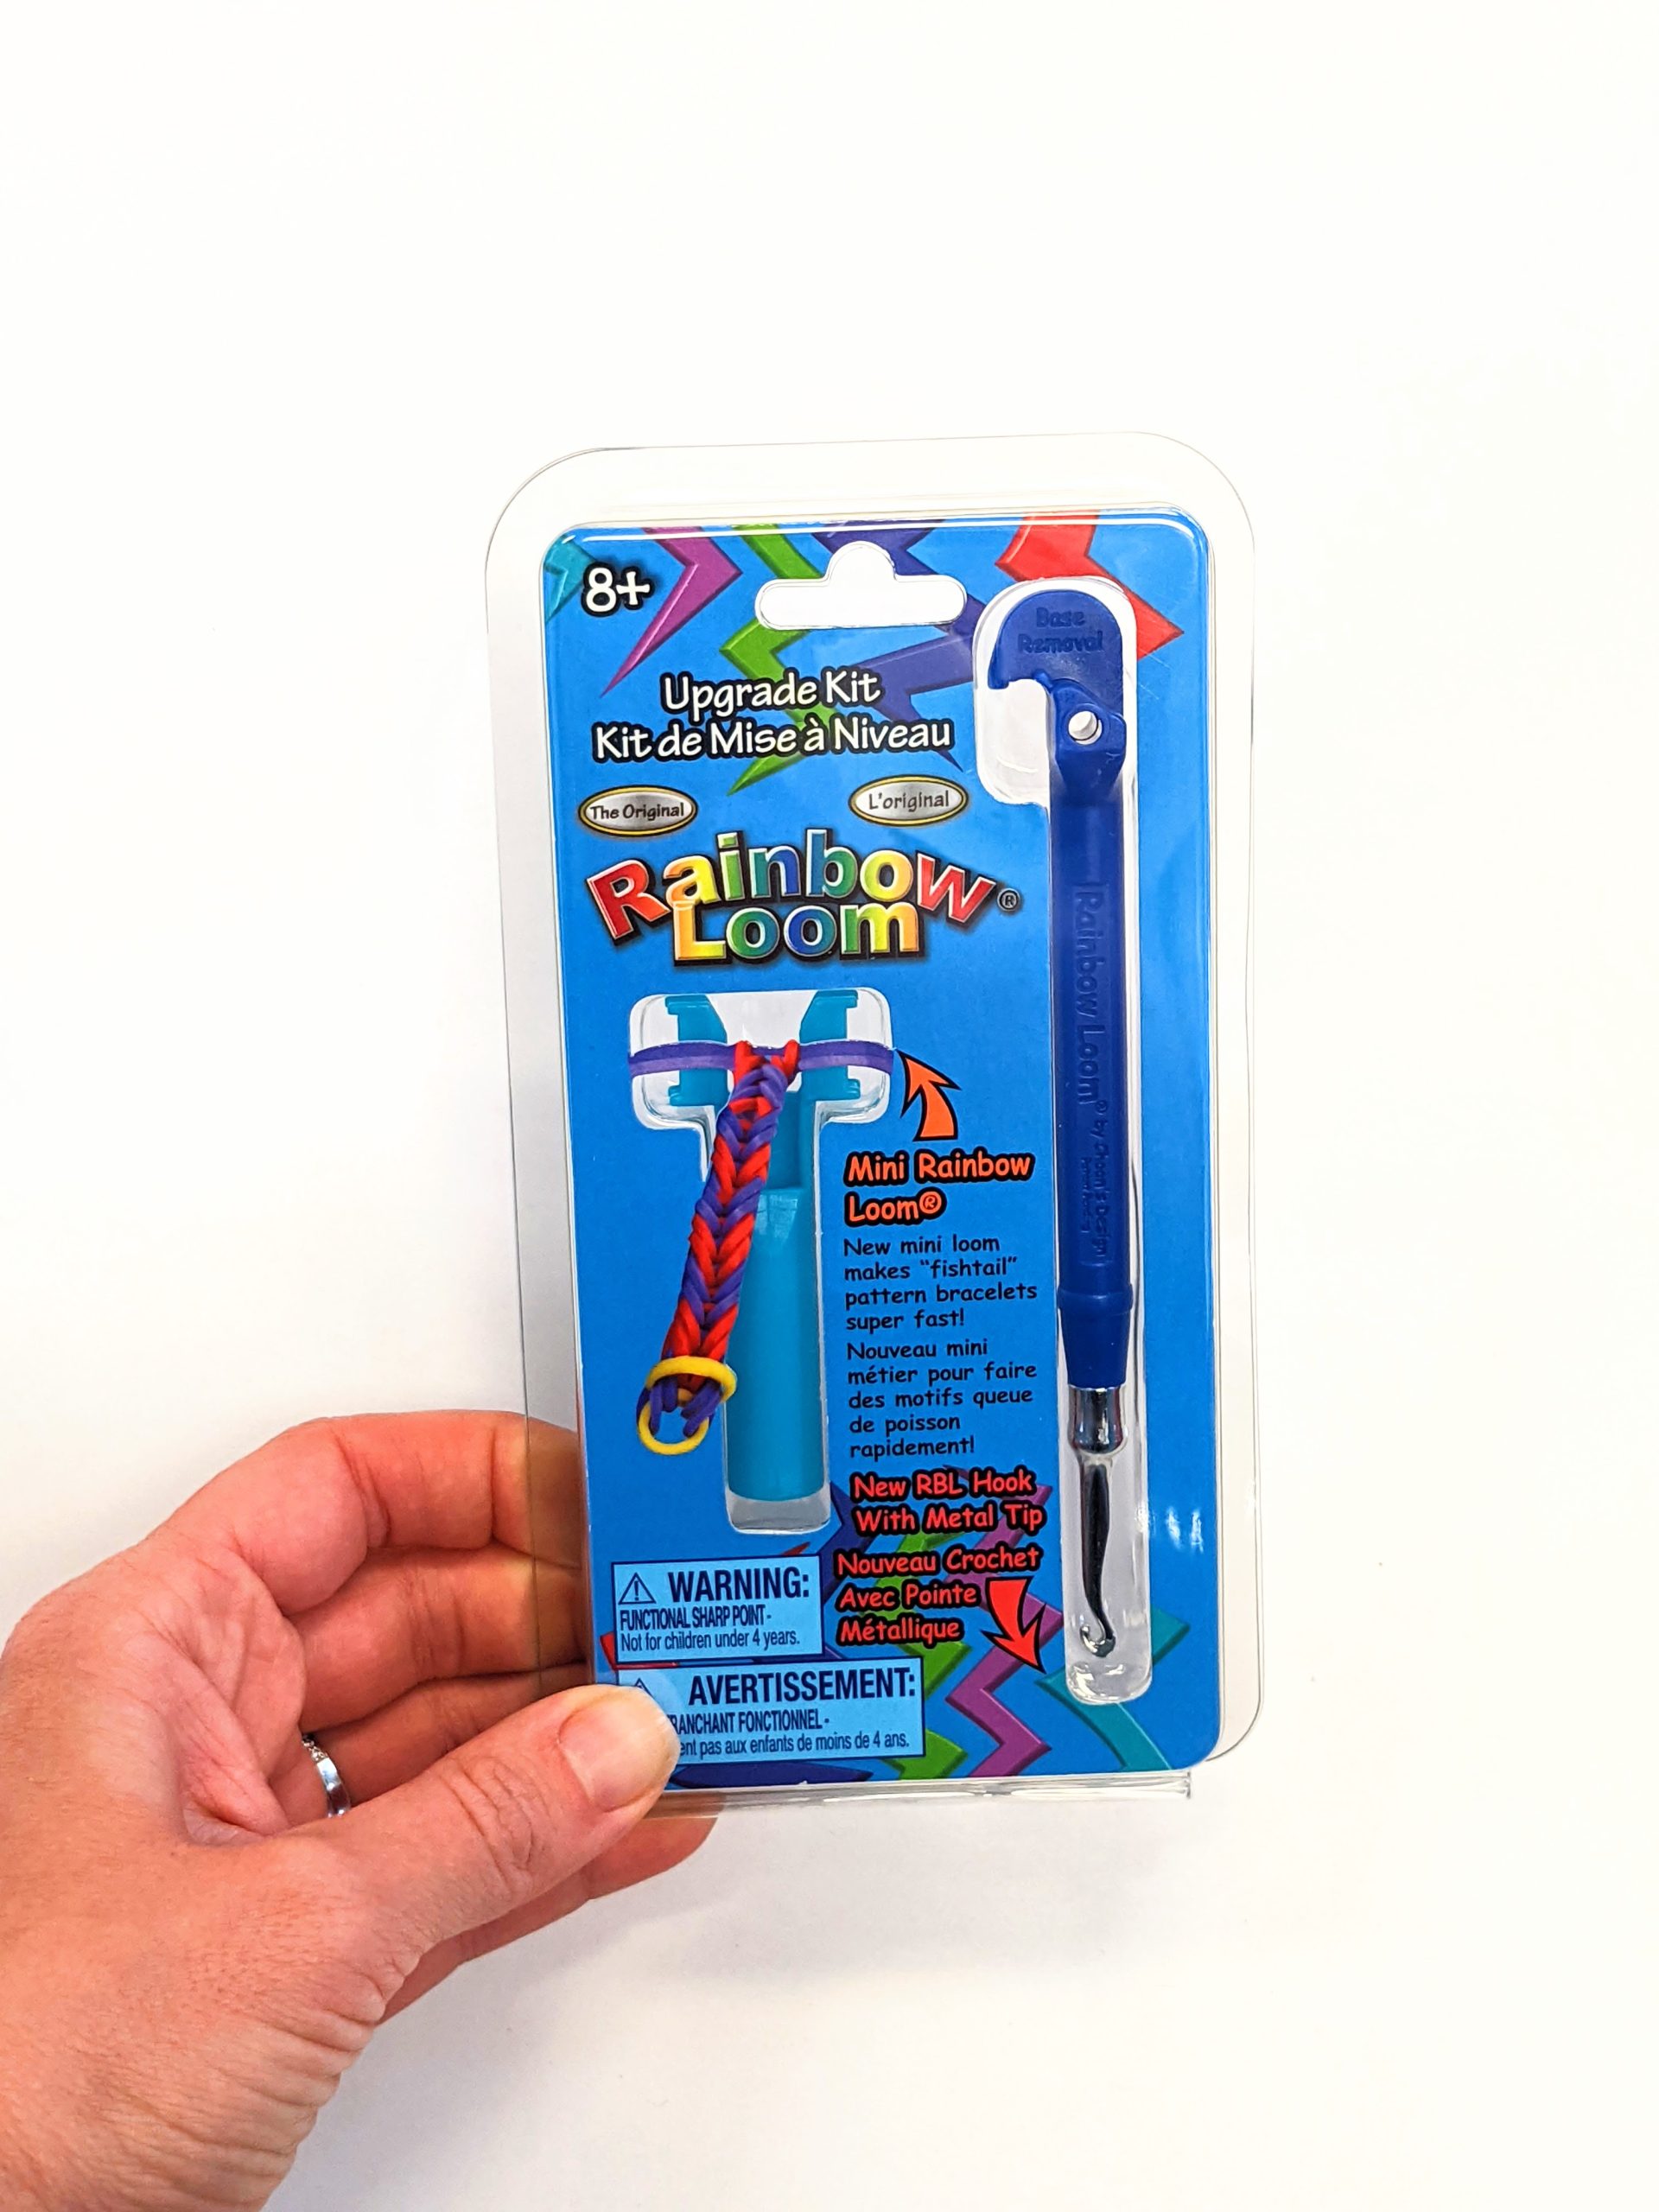 Rainbow Loom Metal Hook Tip Tool Upgrade Kit [Blue] includes Mini Loom